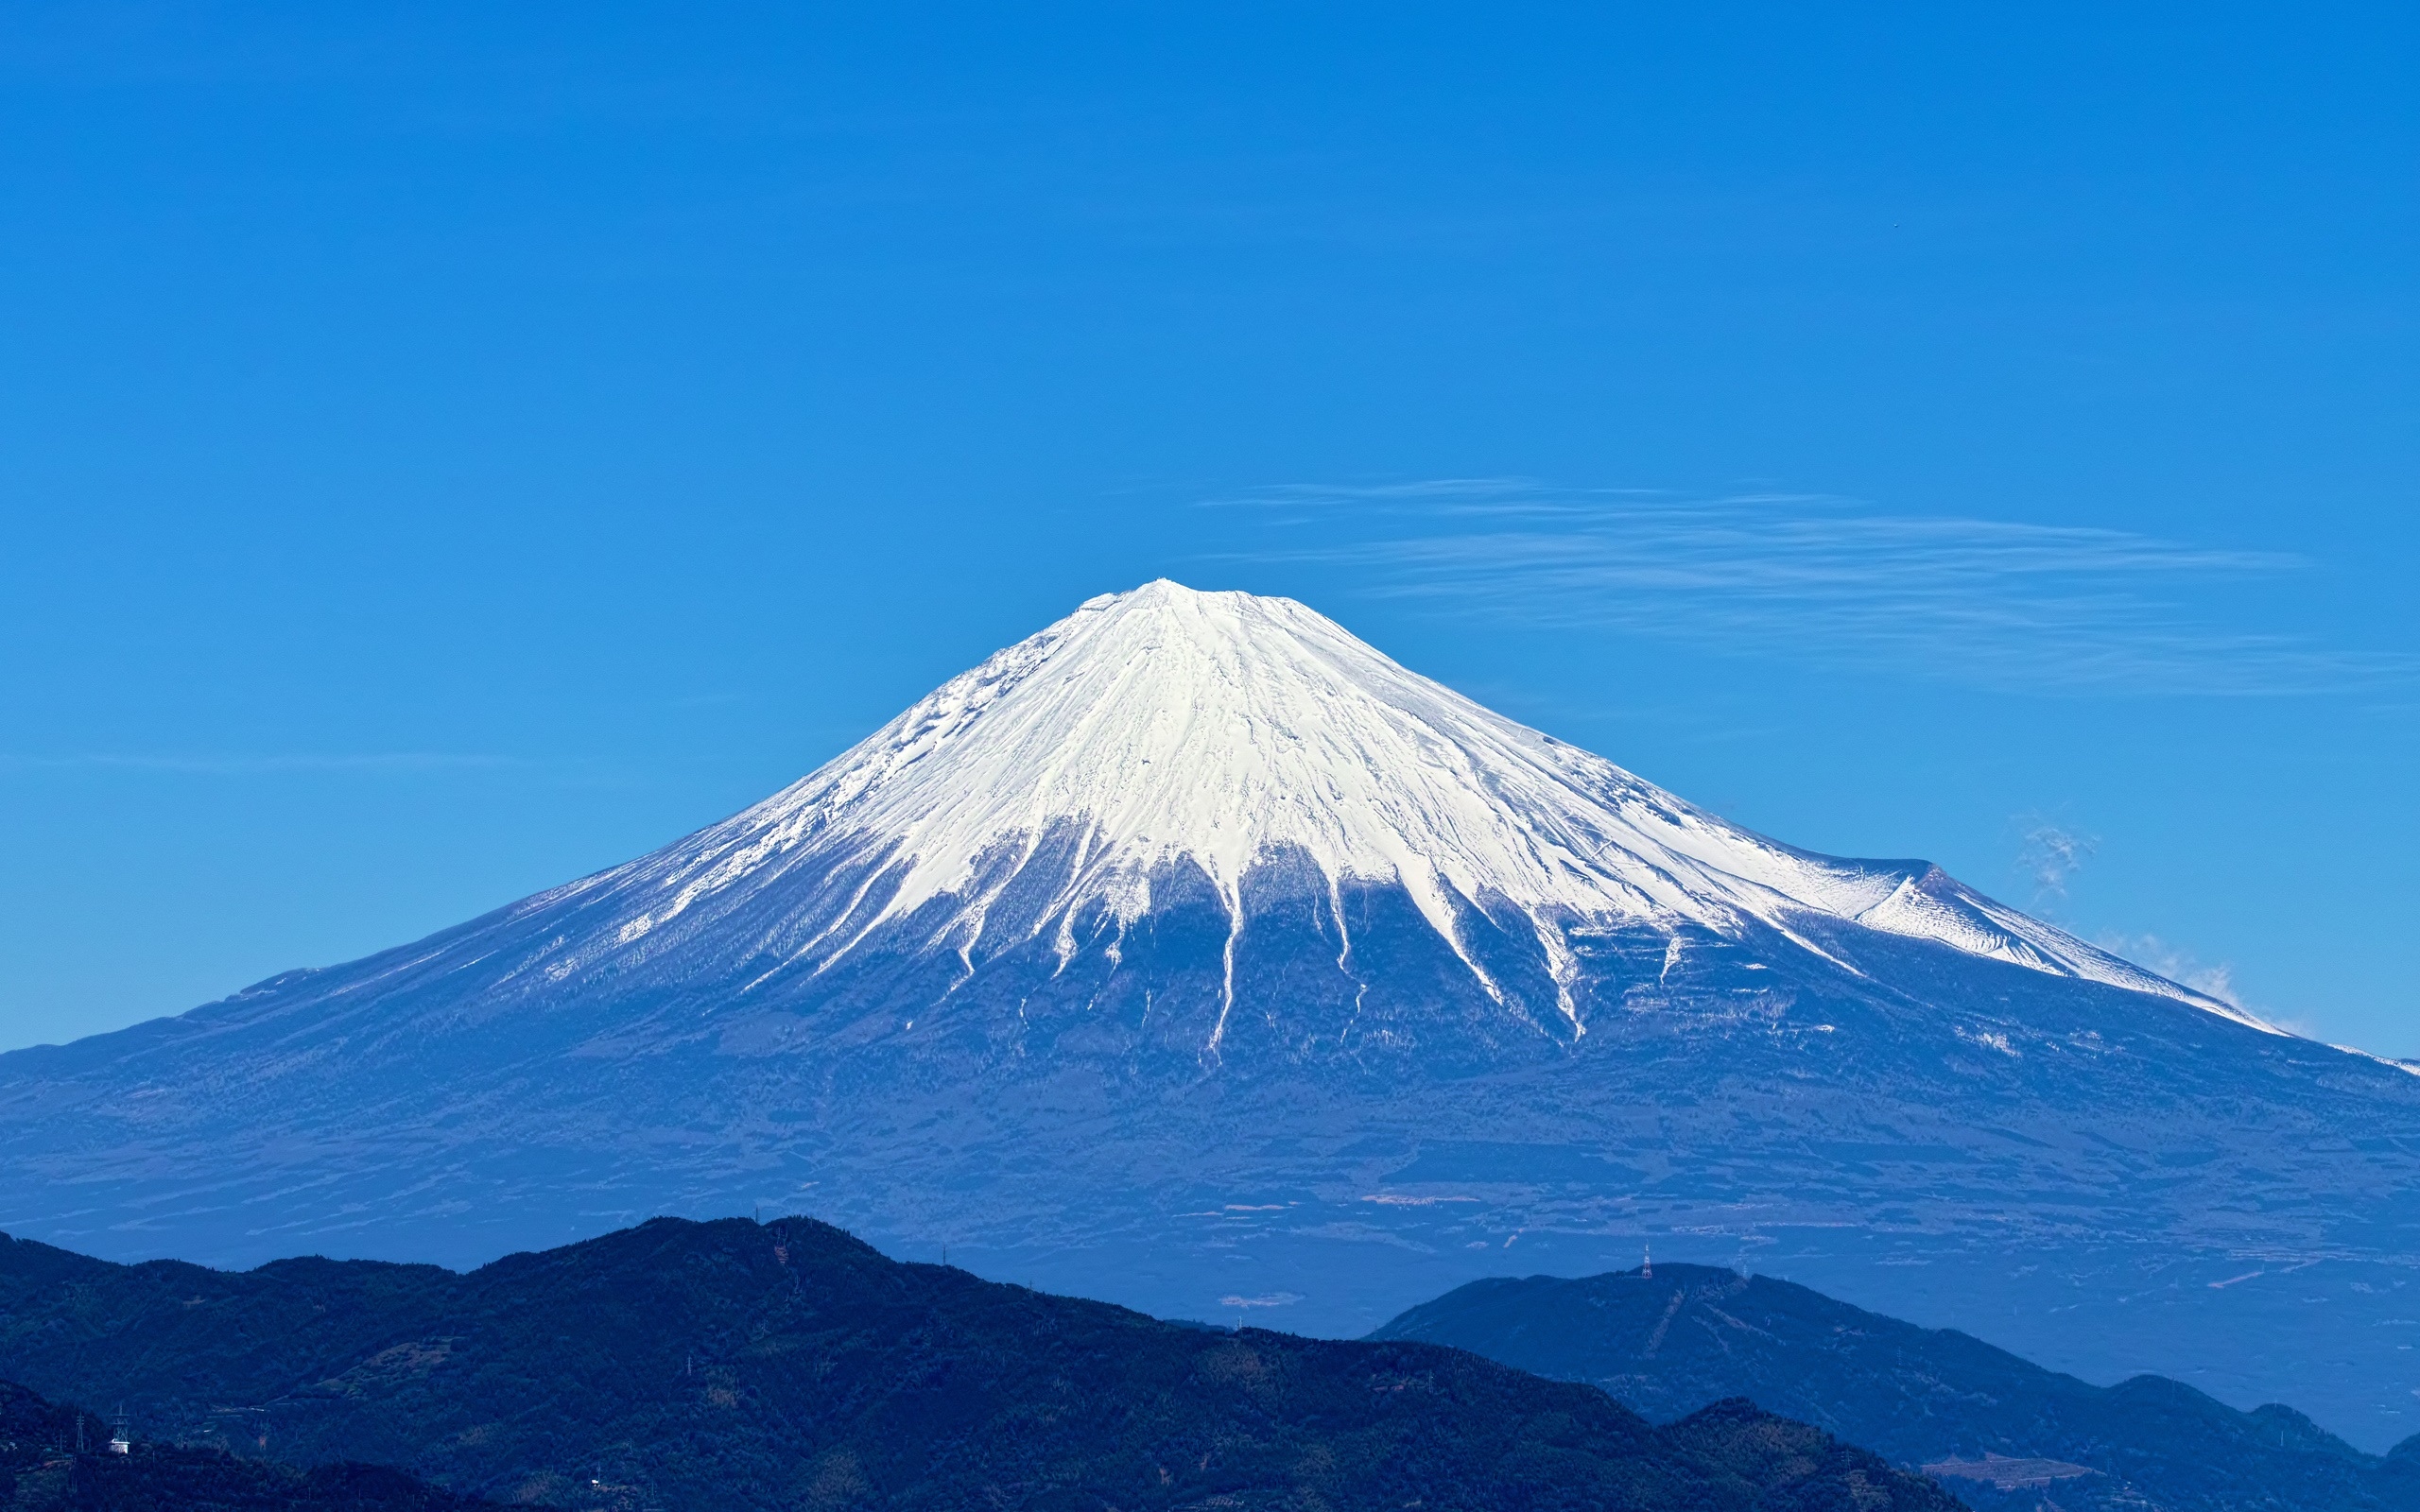 富士山,天空,蓝色,日本风景壁纸1024x600分辨率查看